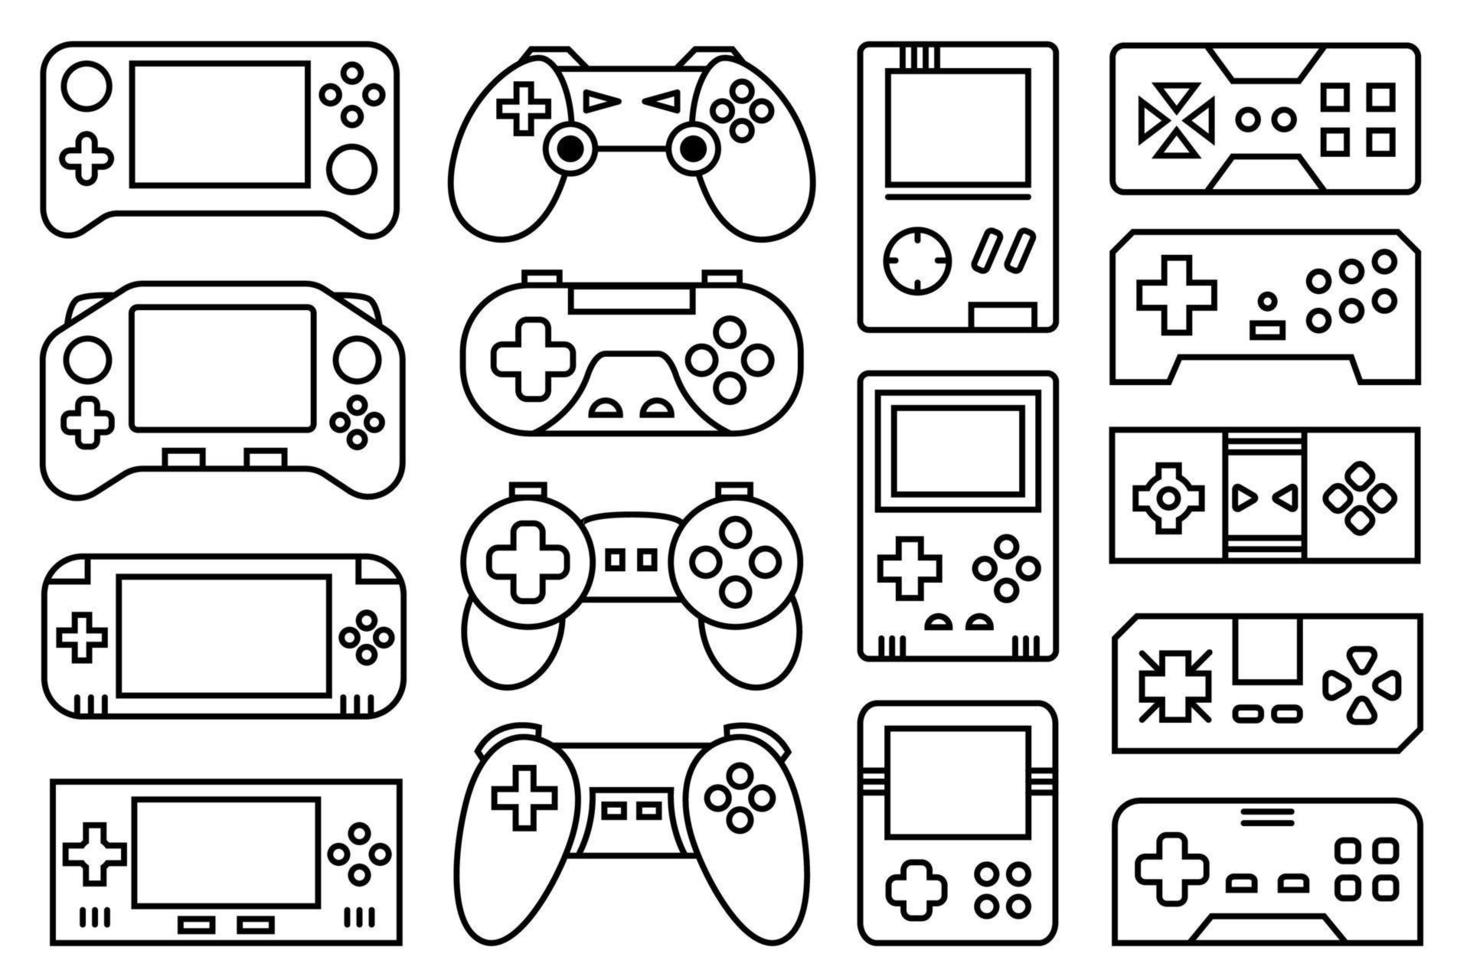 set di illustrazioni di gadget per videogiochi in bianco e nero. collezione di controller per videogiochi wireless e console di gioco portatili, con linea sottile nera. illustrazione vettoriale di contorno.